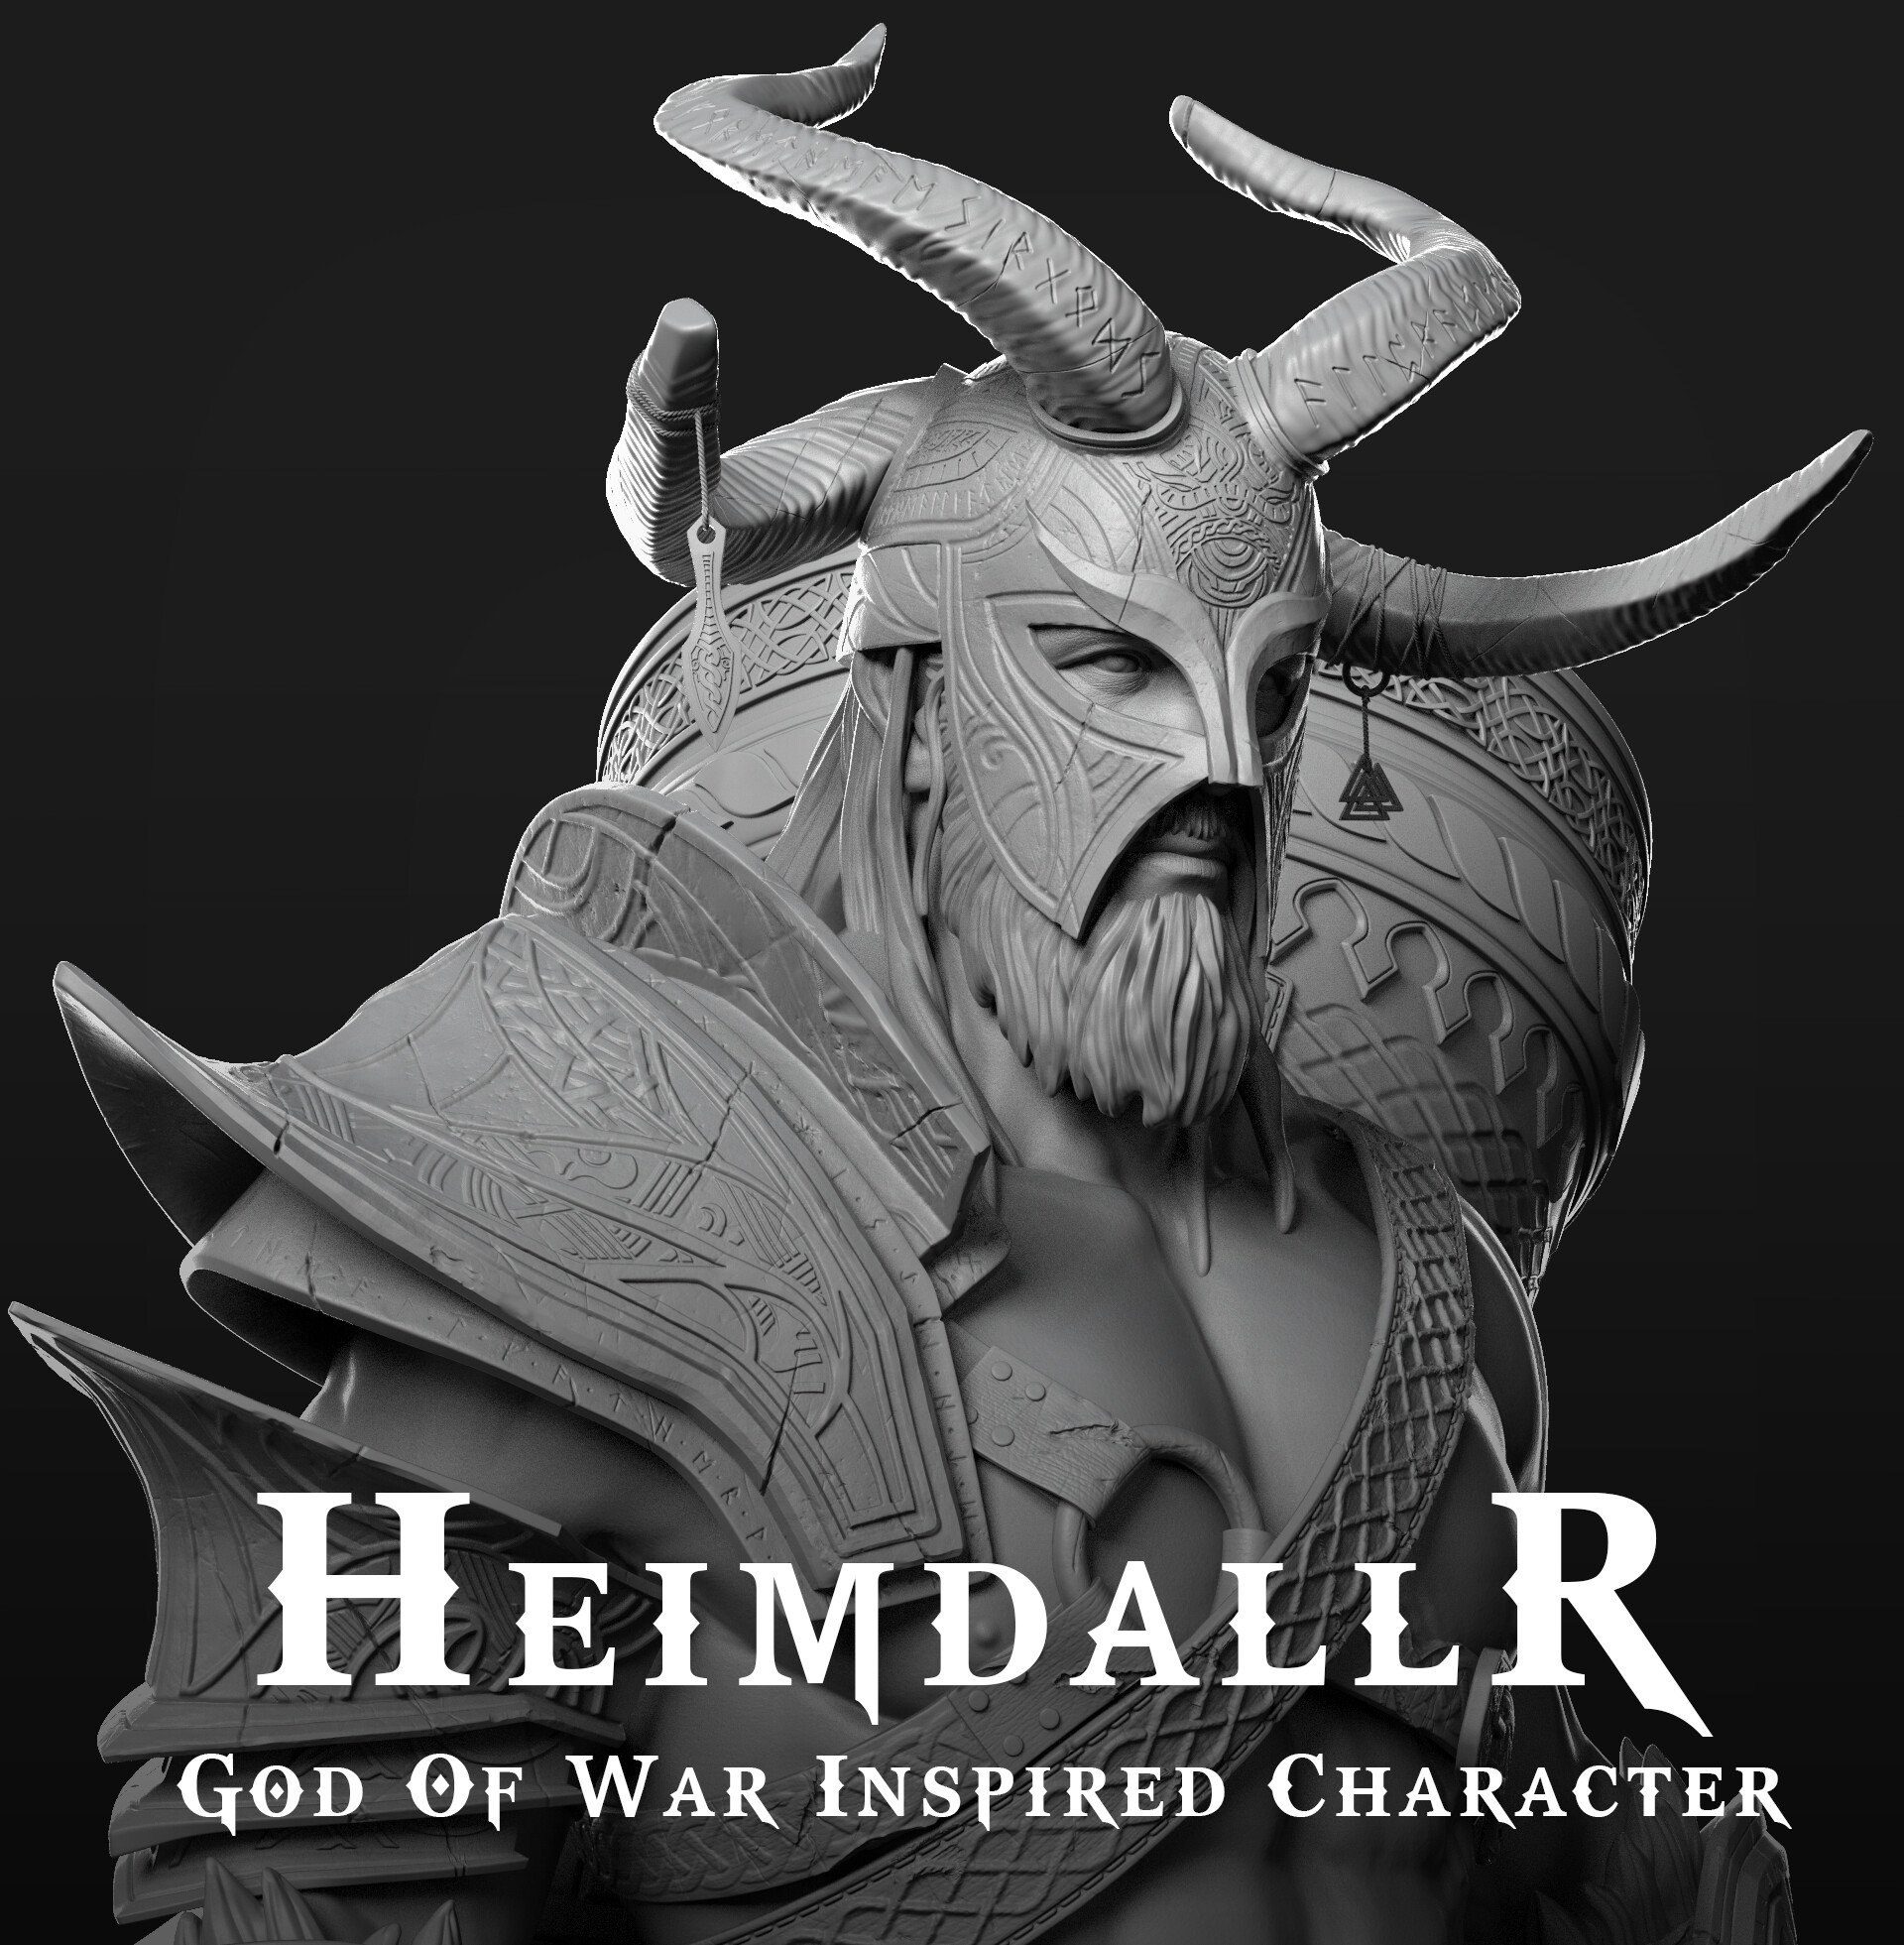 The Art of God of War on X: Heimdall (Concept Art) God of War